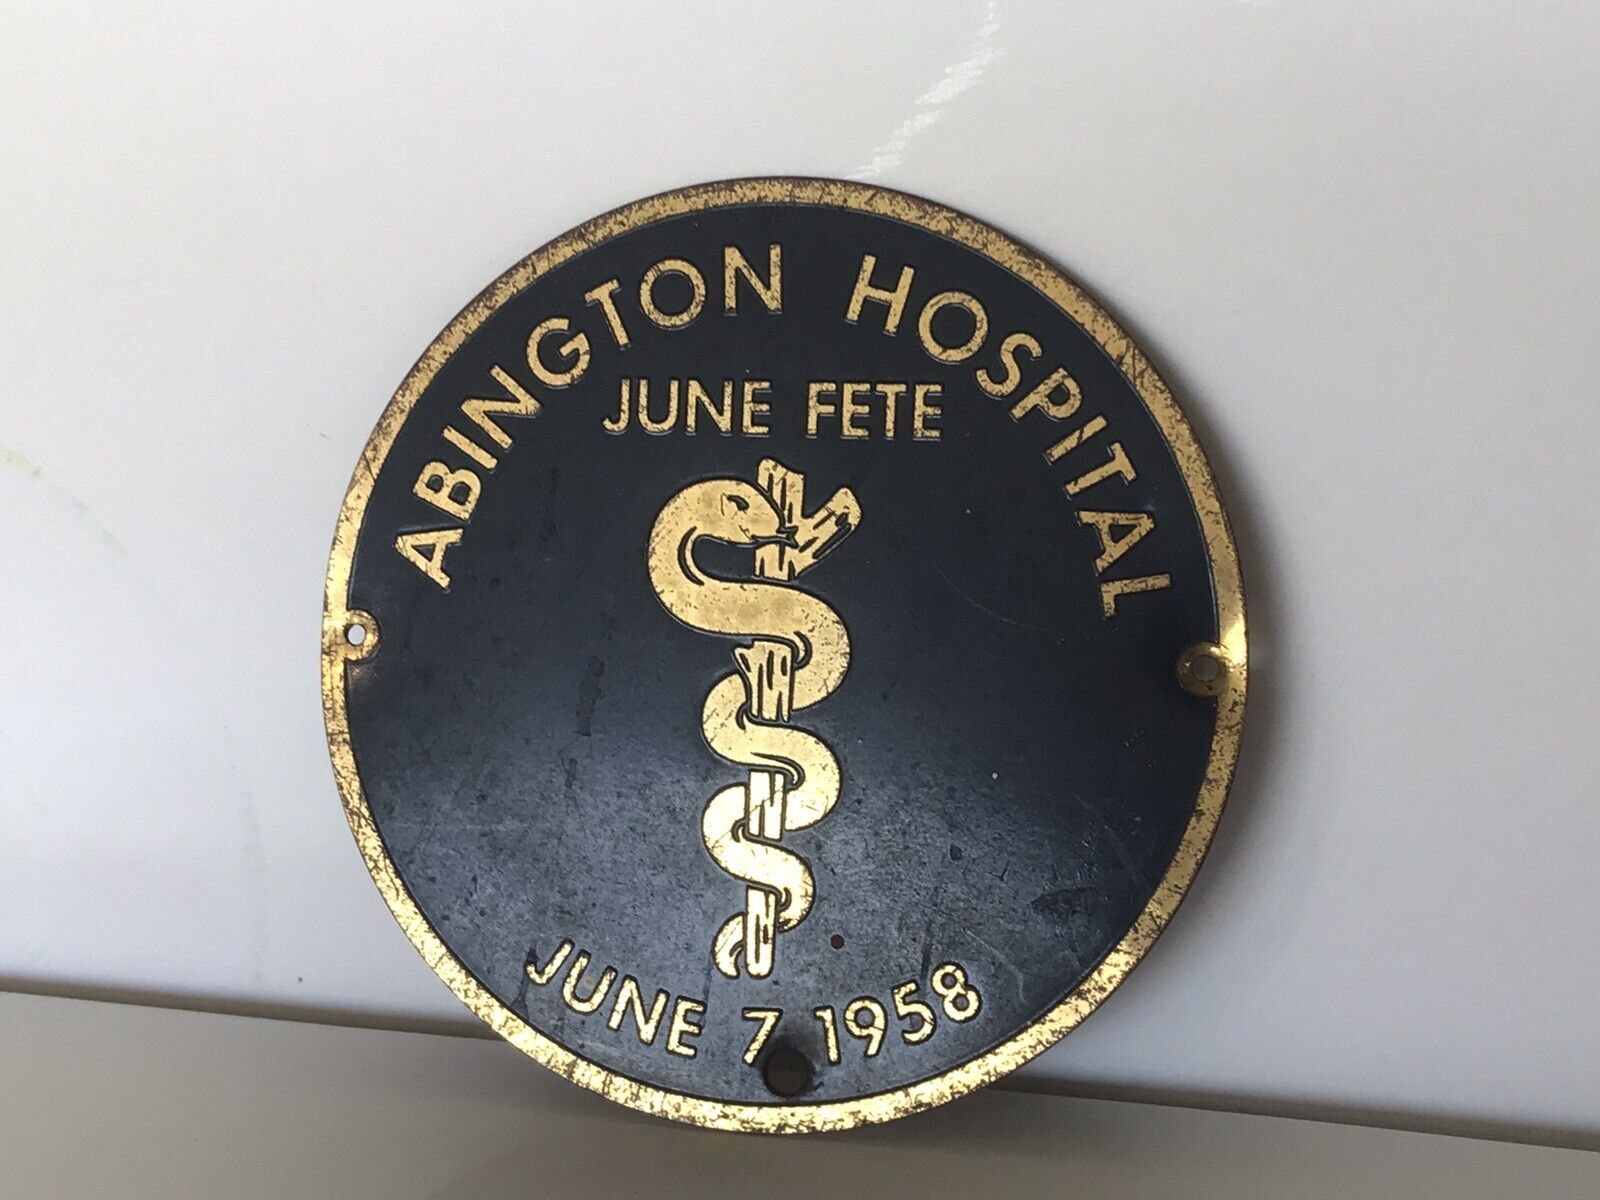 Vintage Abington Hospital June Fete Celebration June 1958 Emblem Metal Original 